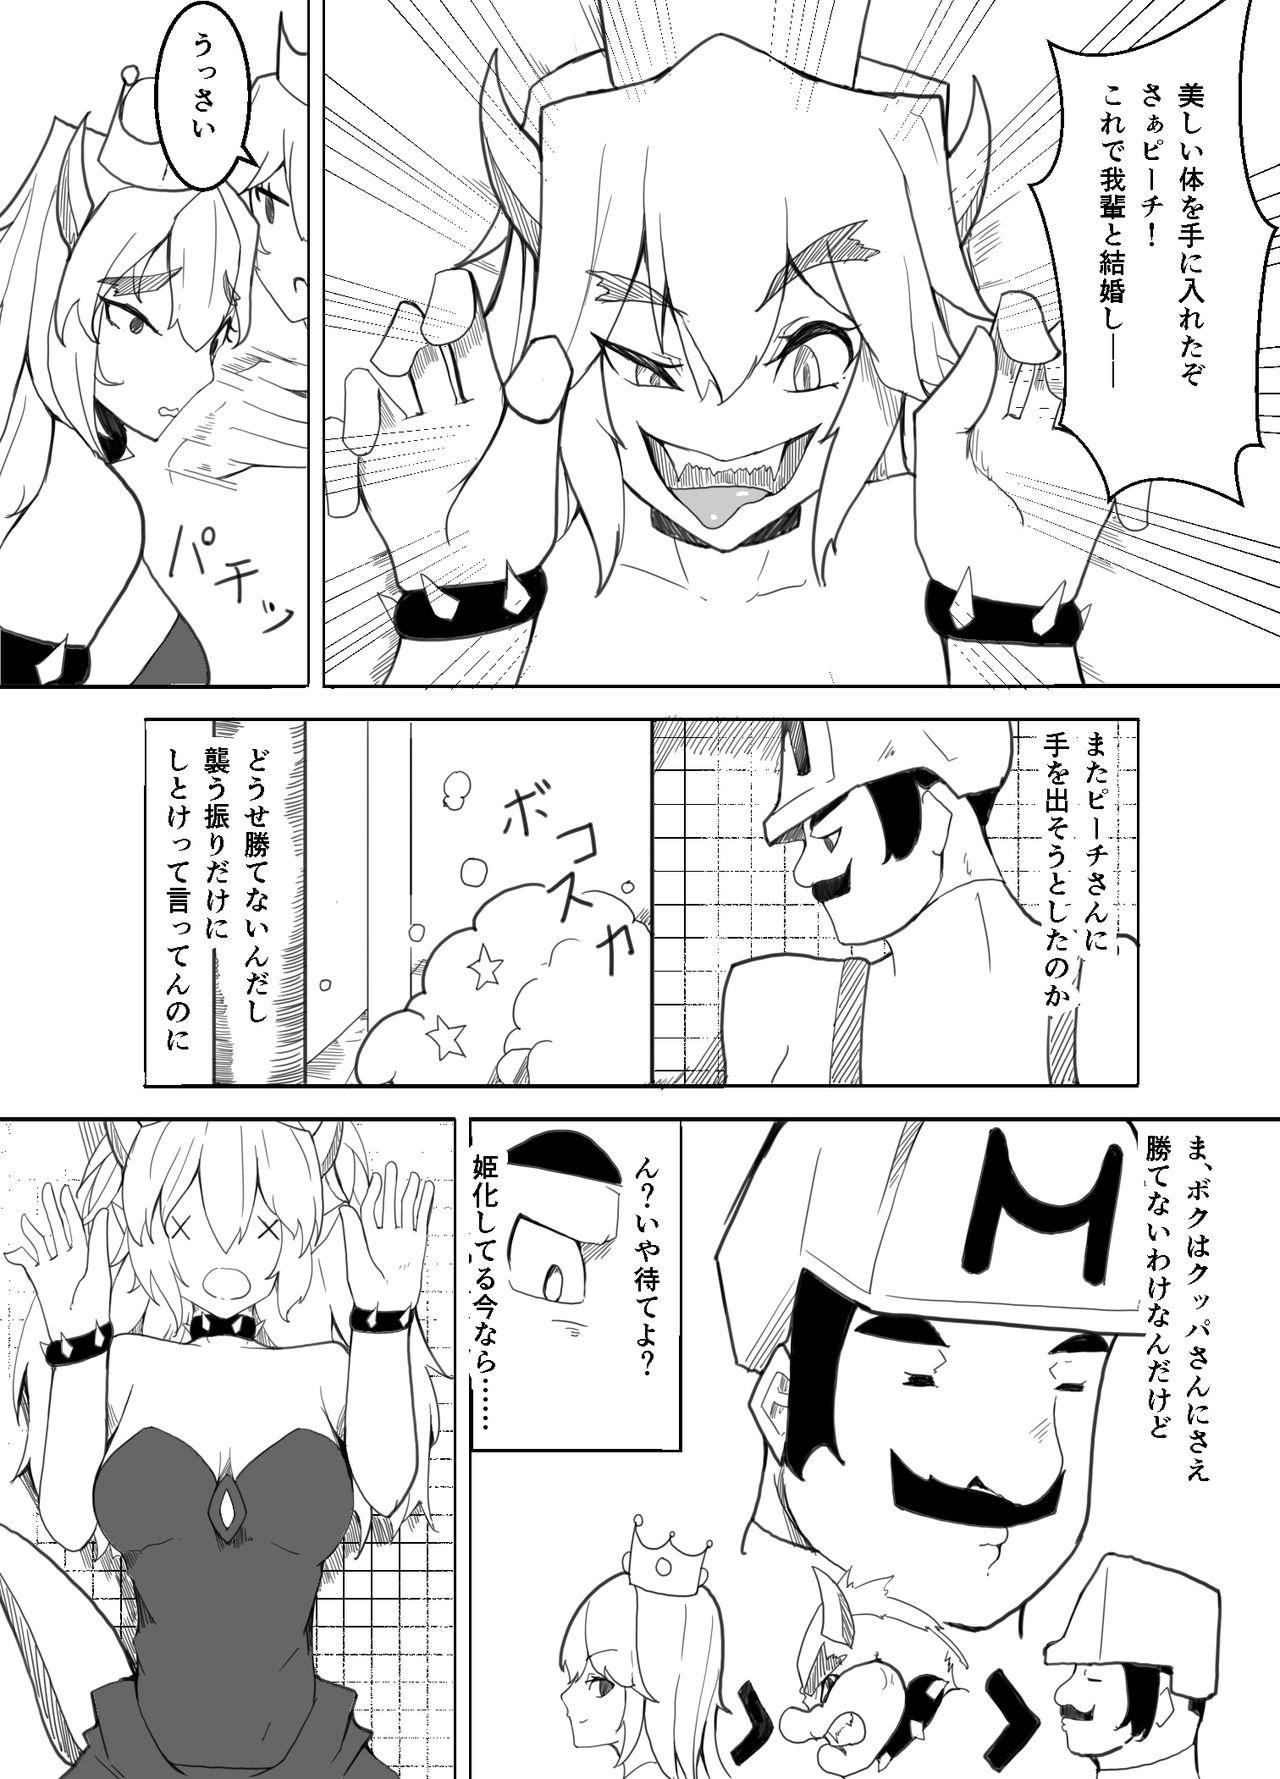 Amigo Koopahime wa Mario Daisuki da to Omou - Super mario brothers Shecock - Page 1